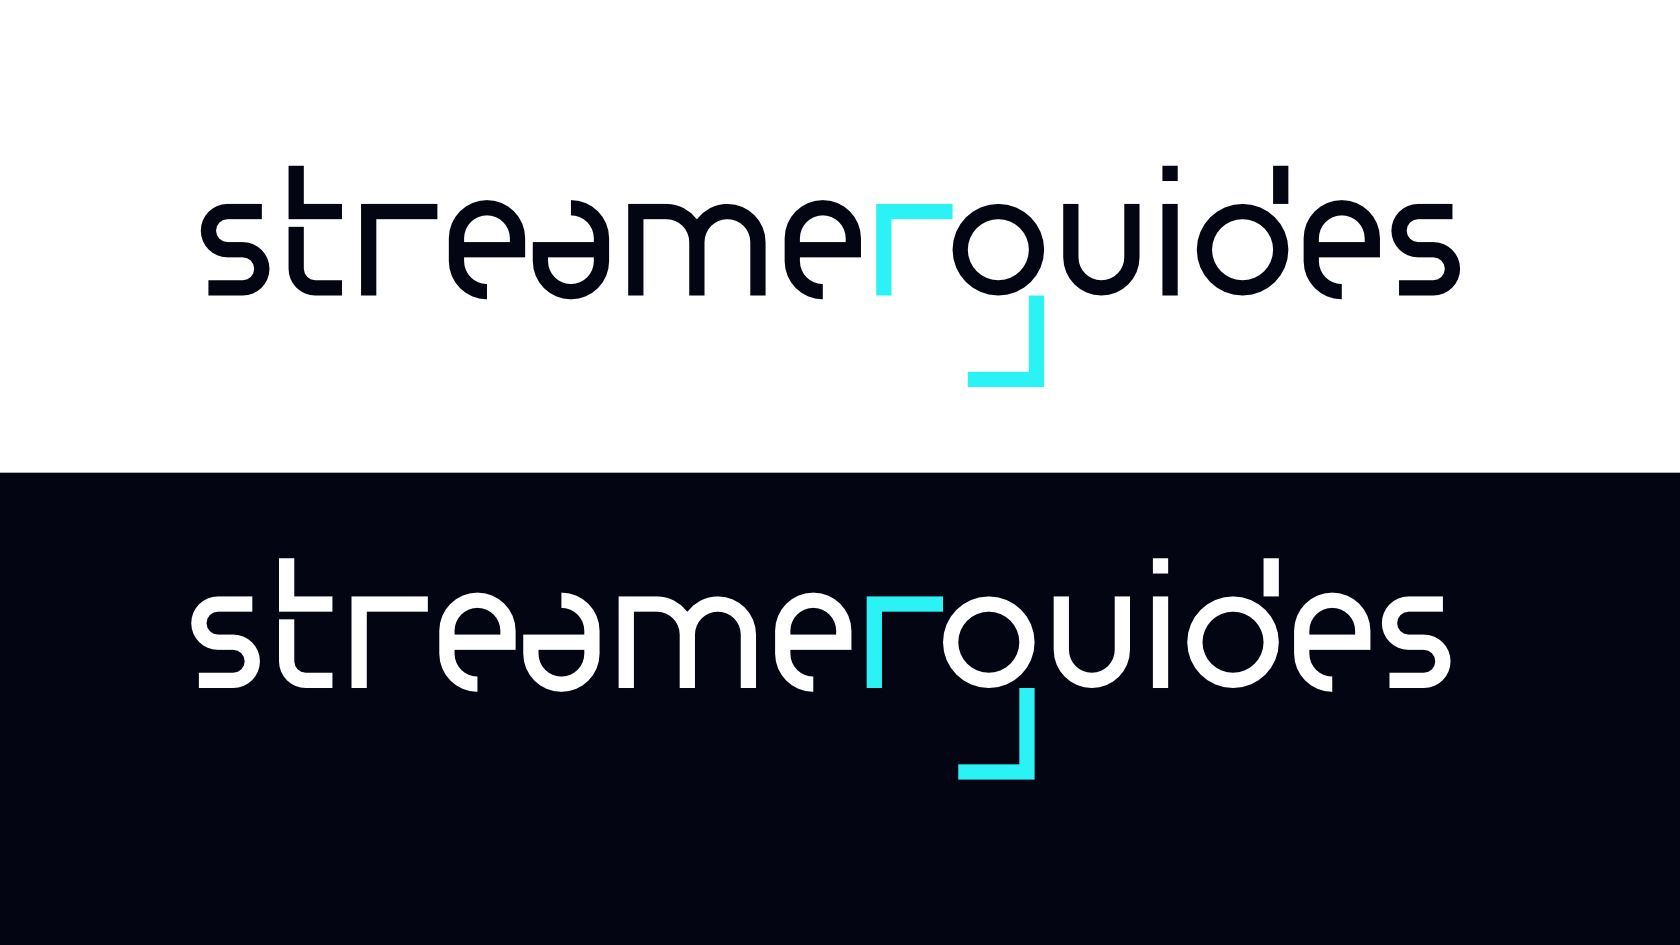 Les 2 variantes du logo "Streamerguides" pour fond clair et fond foncé.